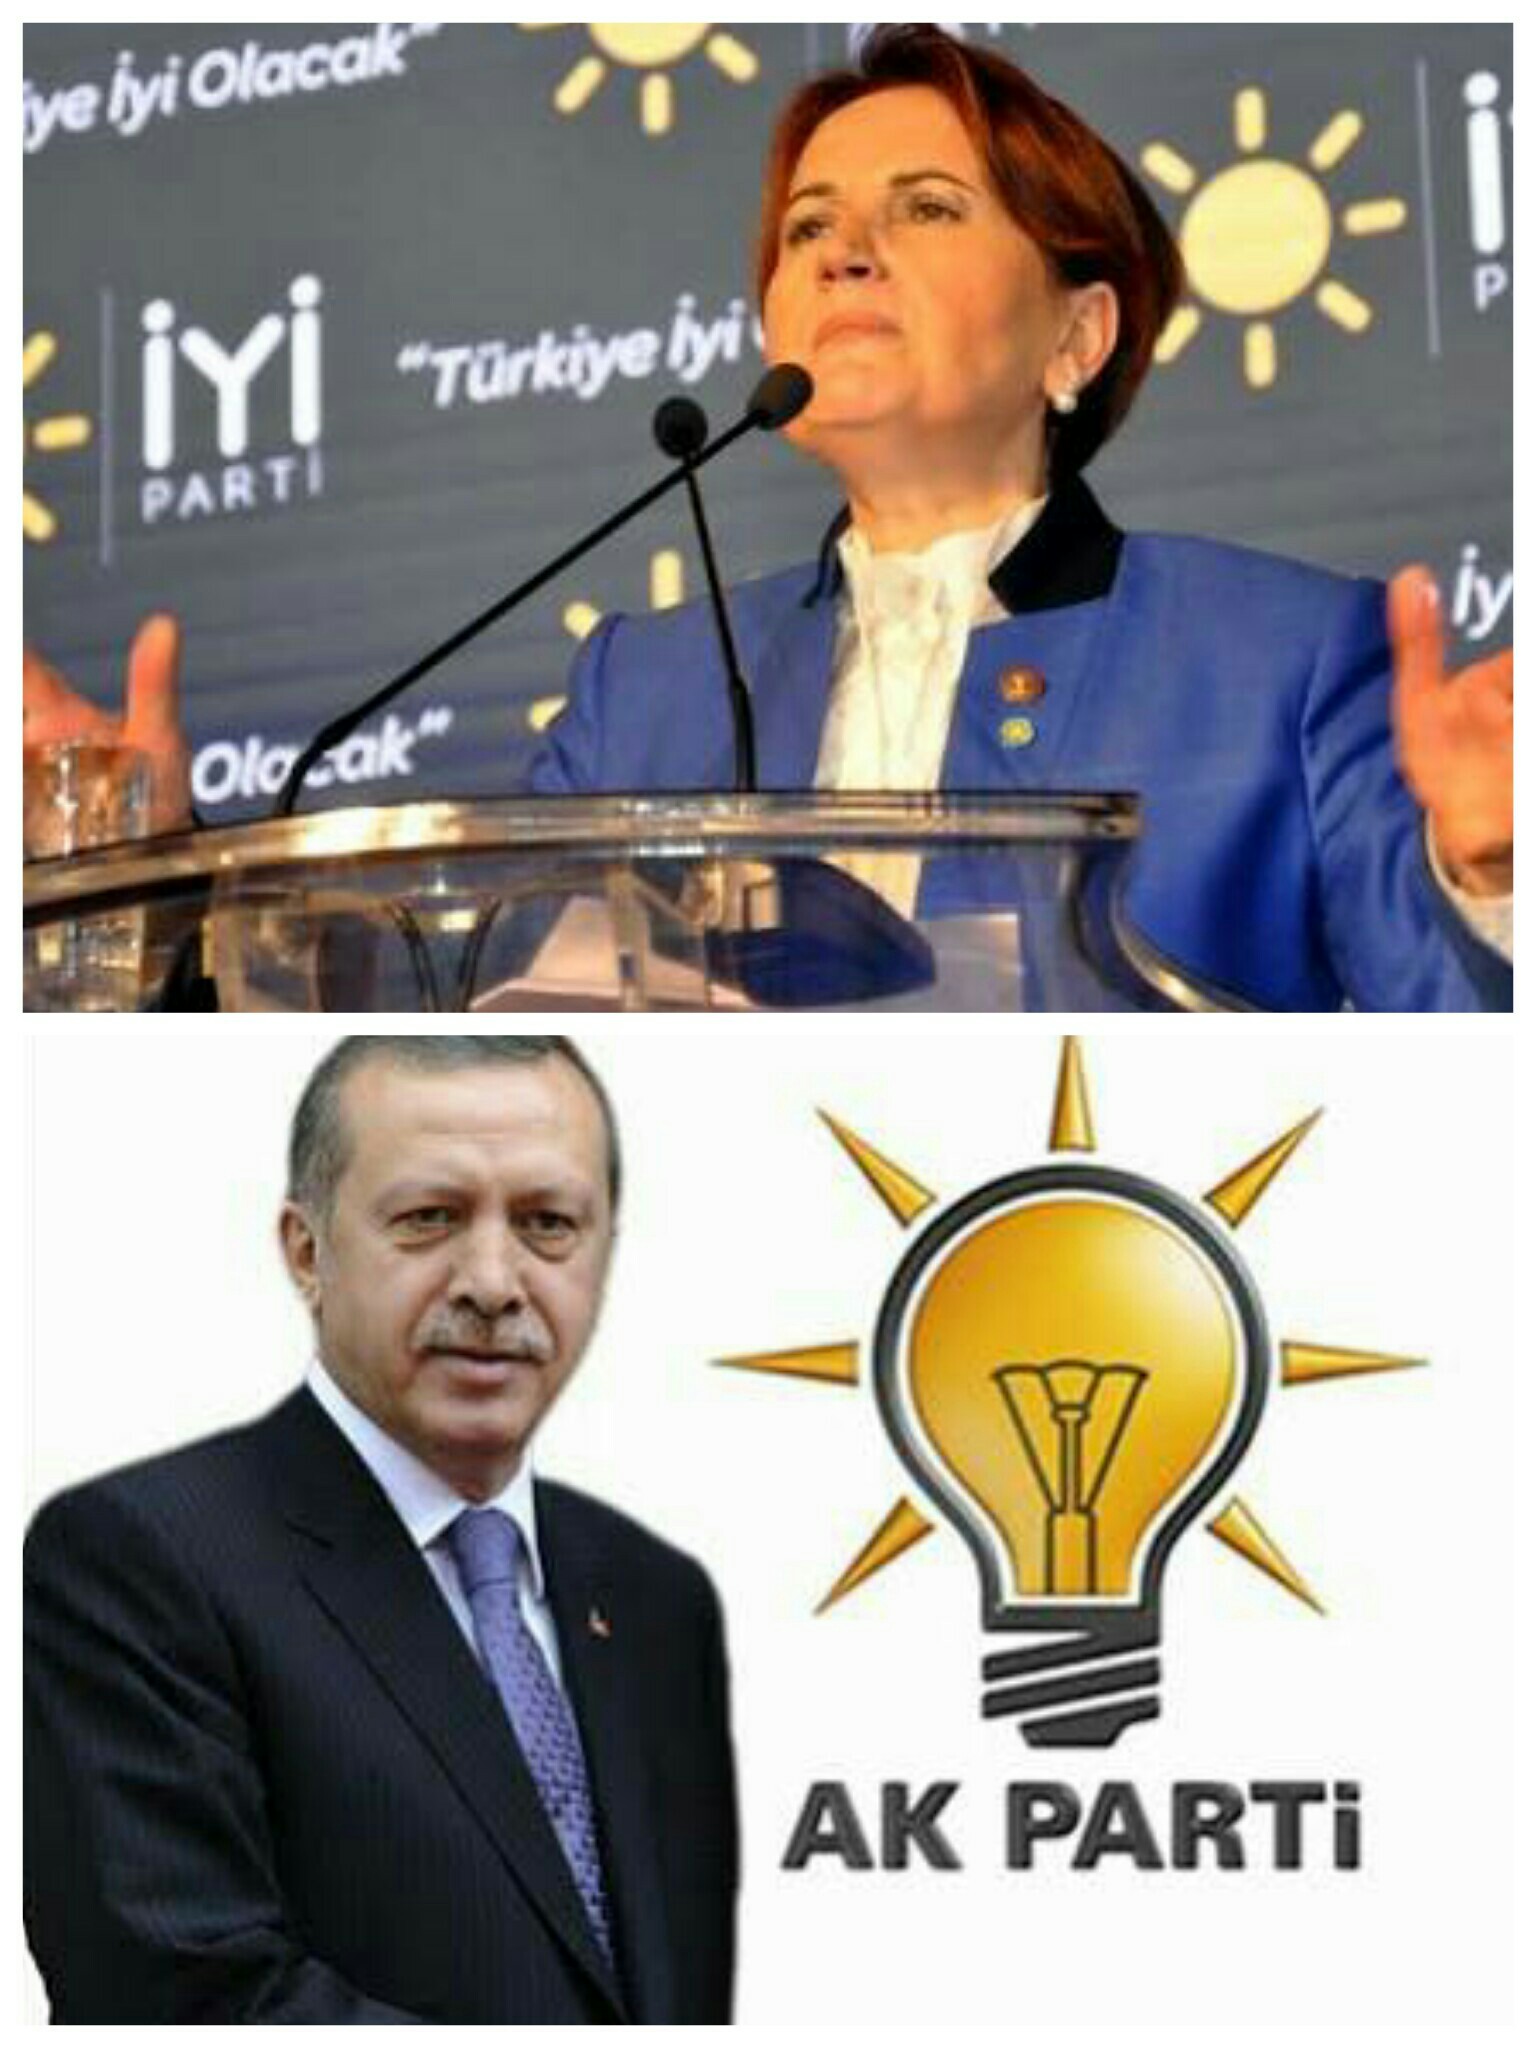 Göçmen kızı Meral Akşener, Cumhurbaşkanlığı seçiminde Erdoğan'a rakip olabilecek mi?